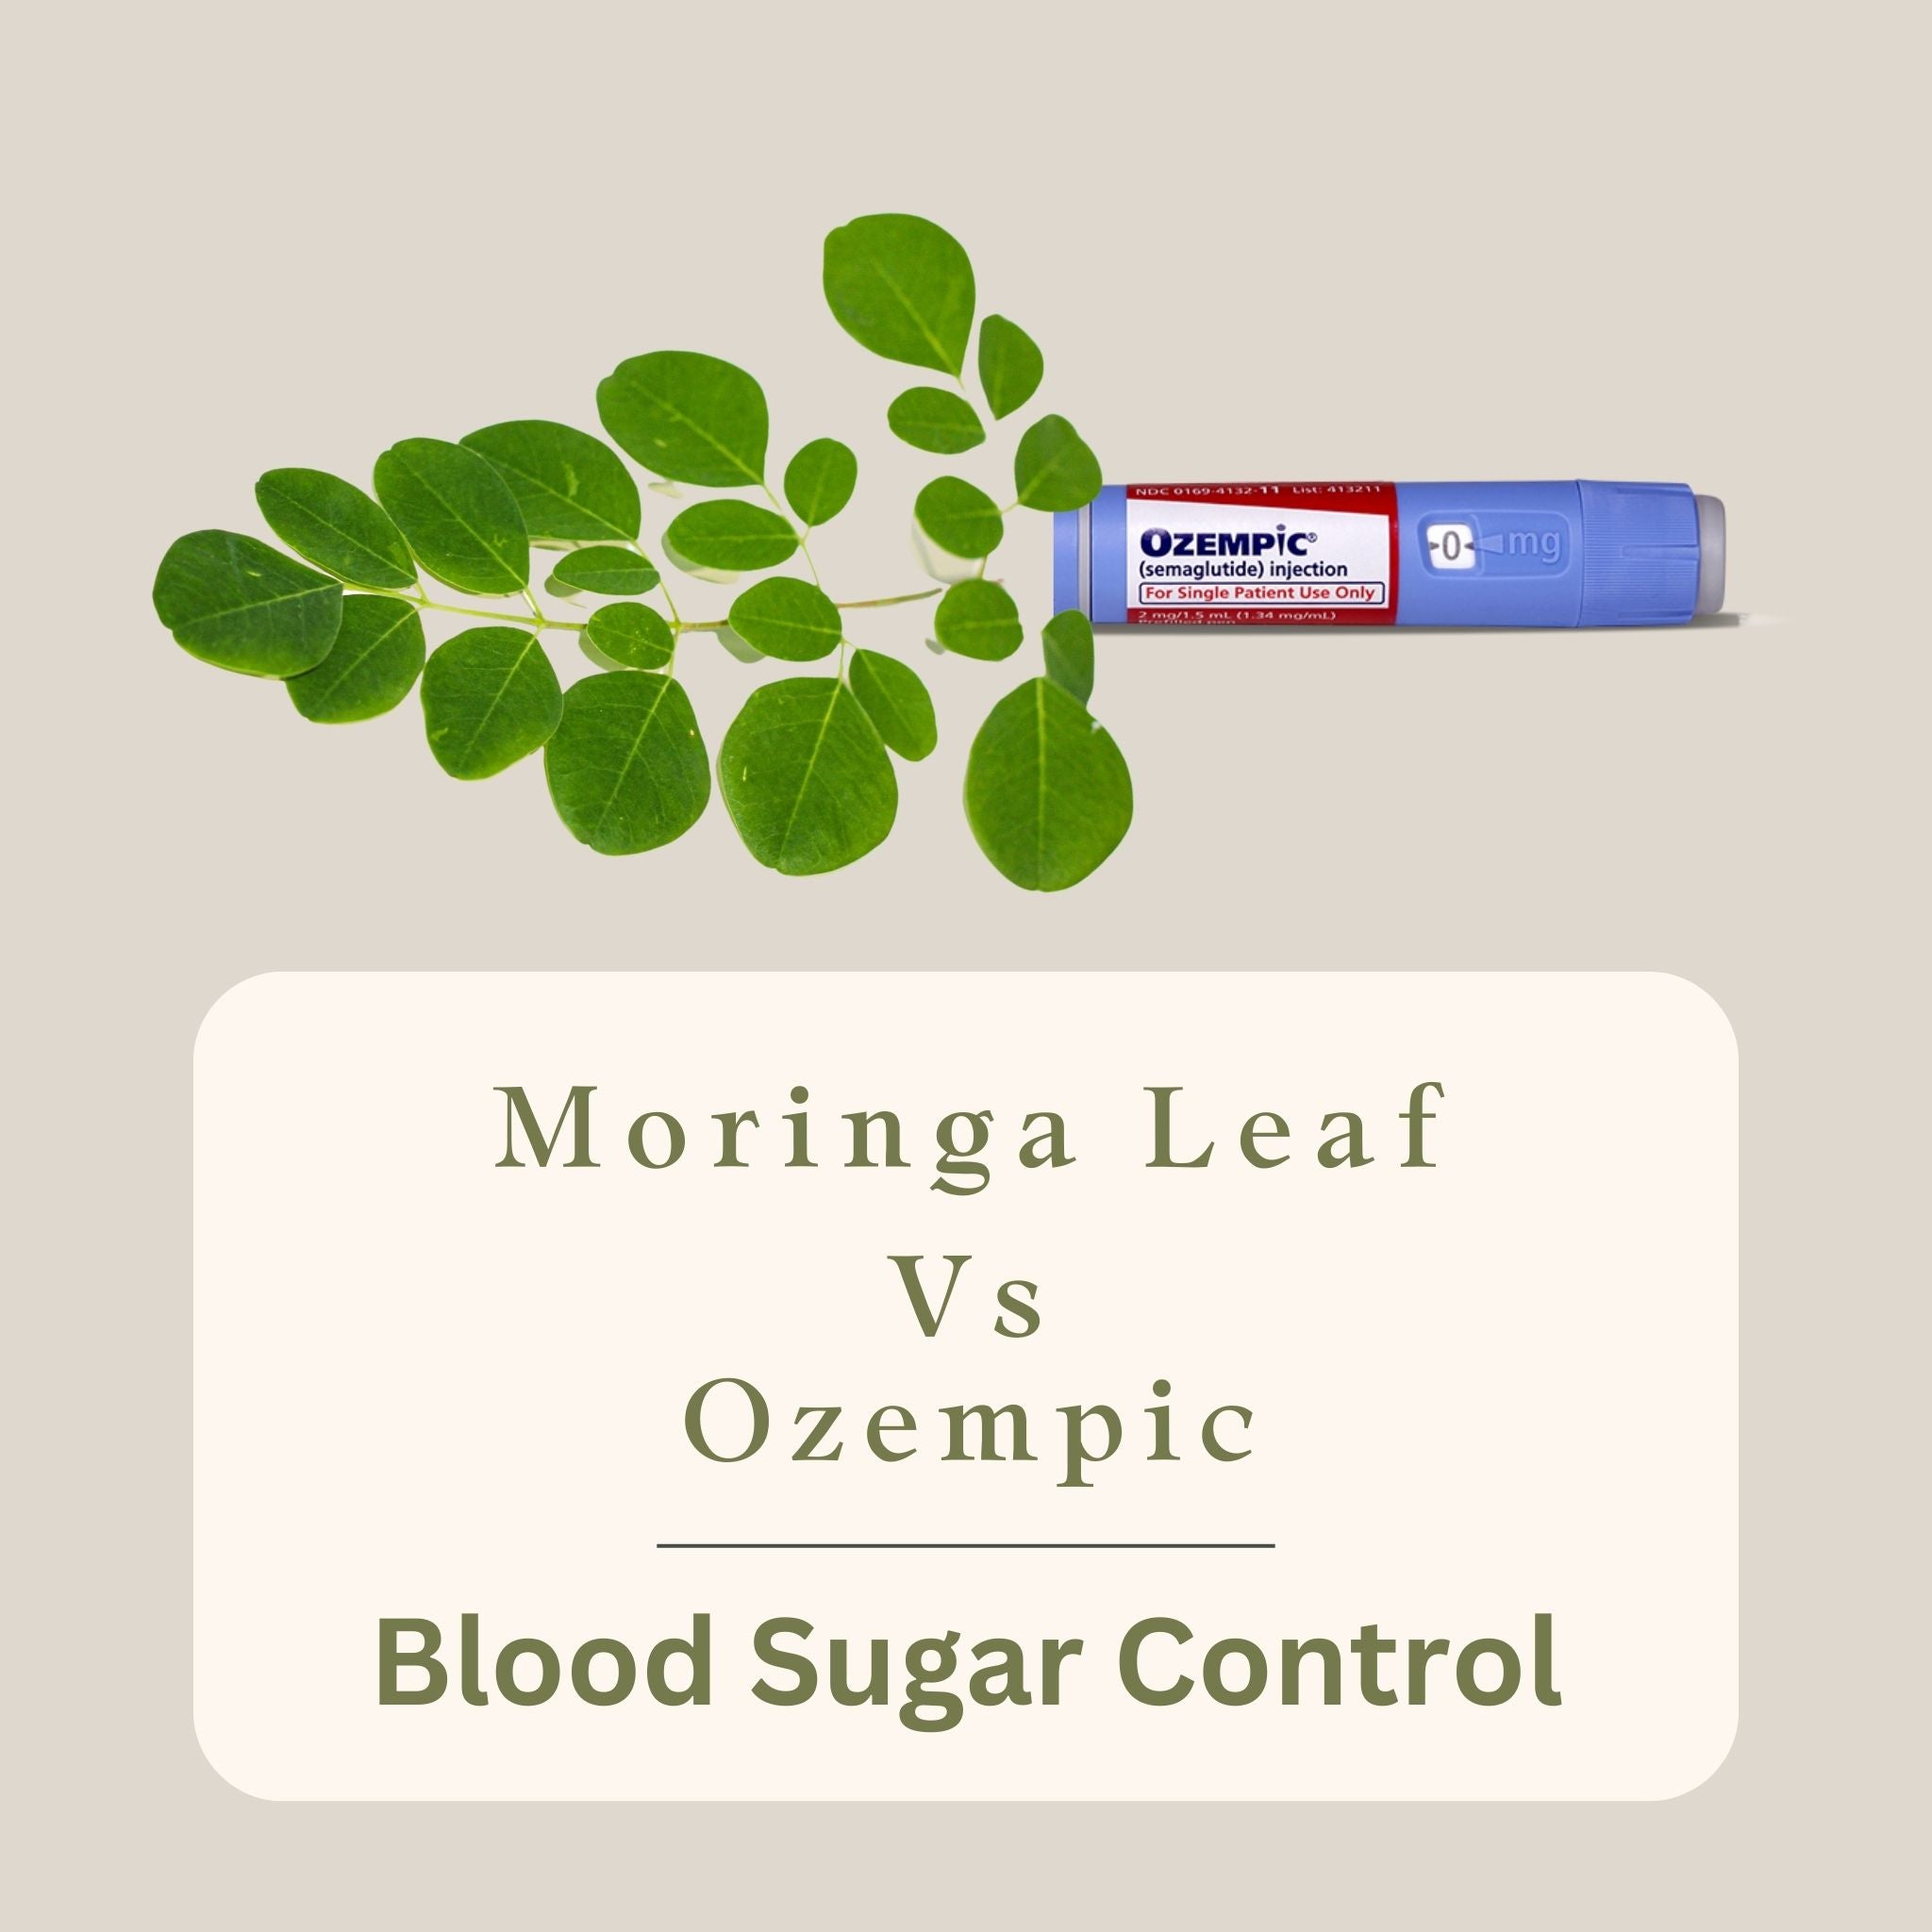 Moringa and ozempic blood sugar control